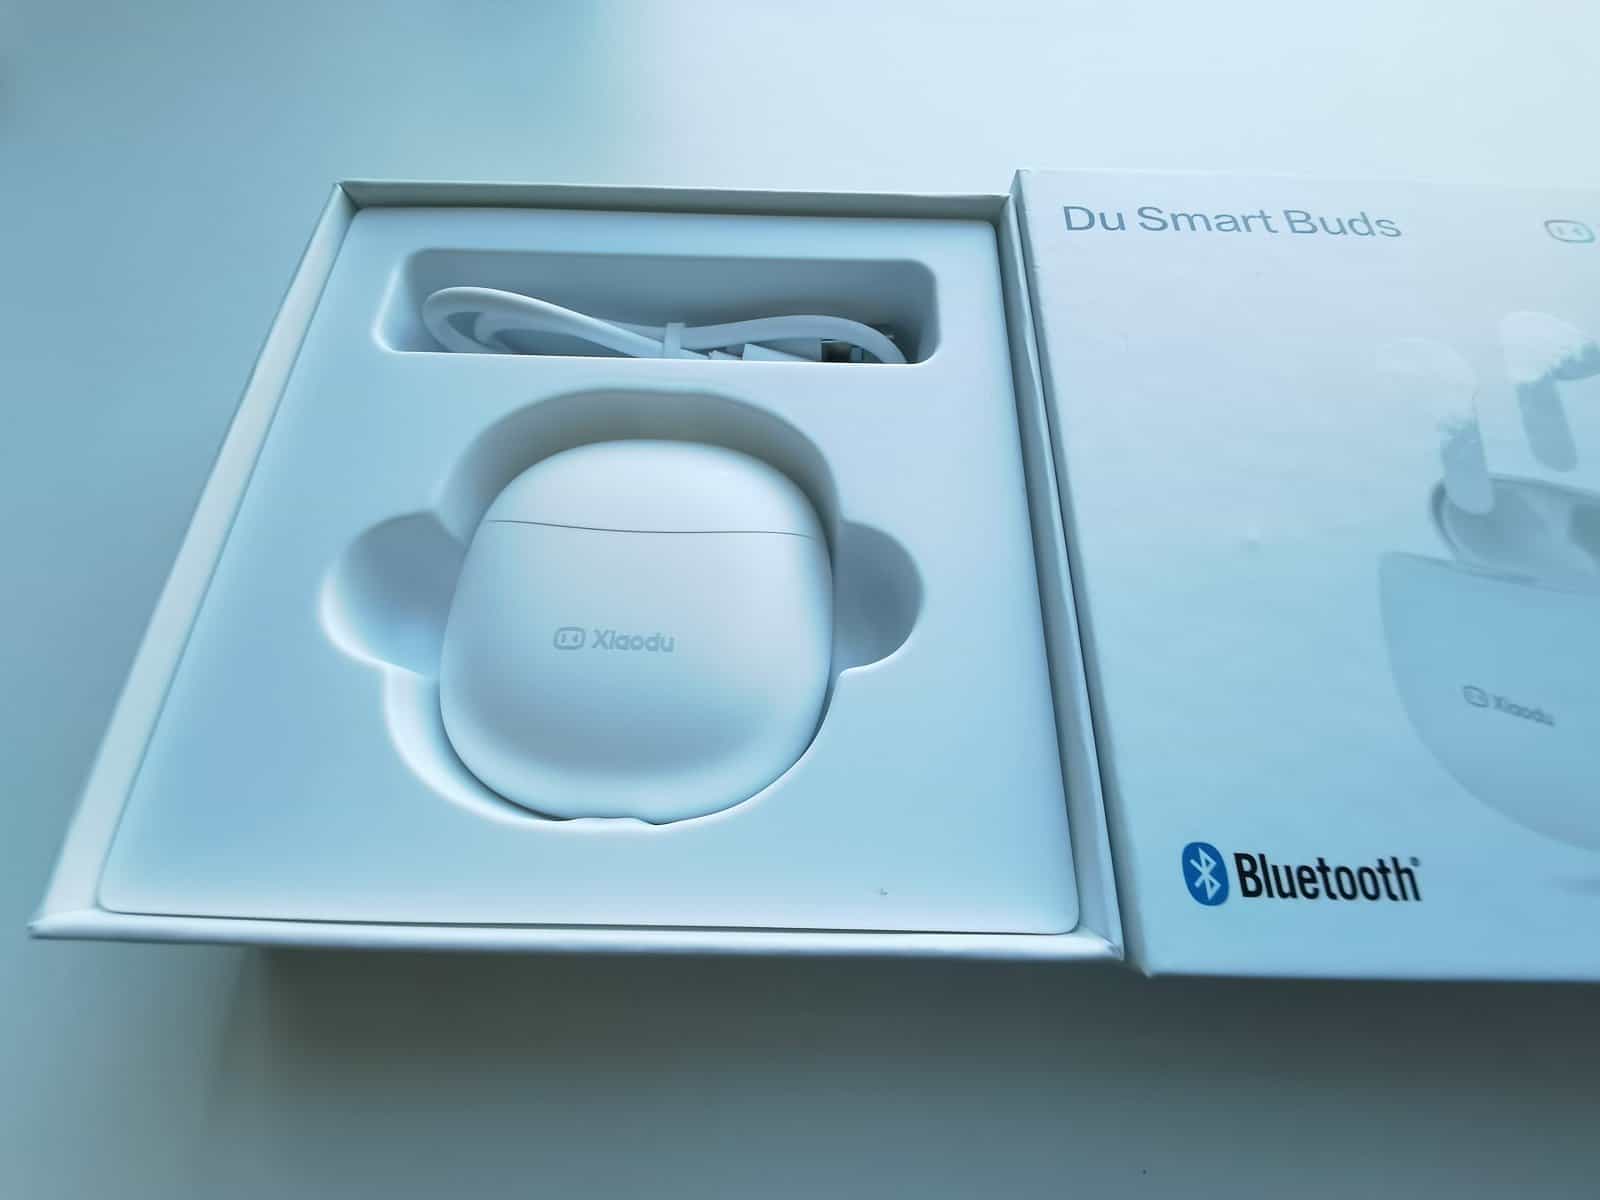 du-smart-buds-13-14-16 Xiaodu Du Smart Buds: fone de ouvido barato tem cancelamento de ruído e baixa latência